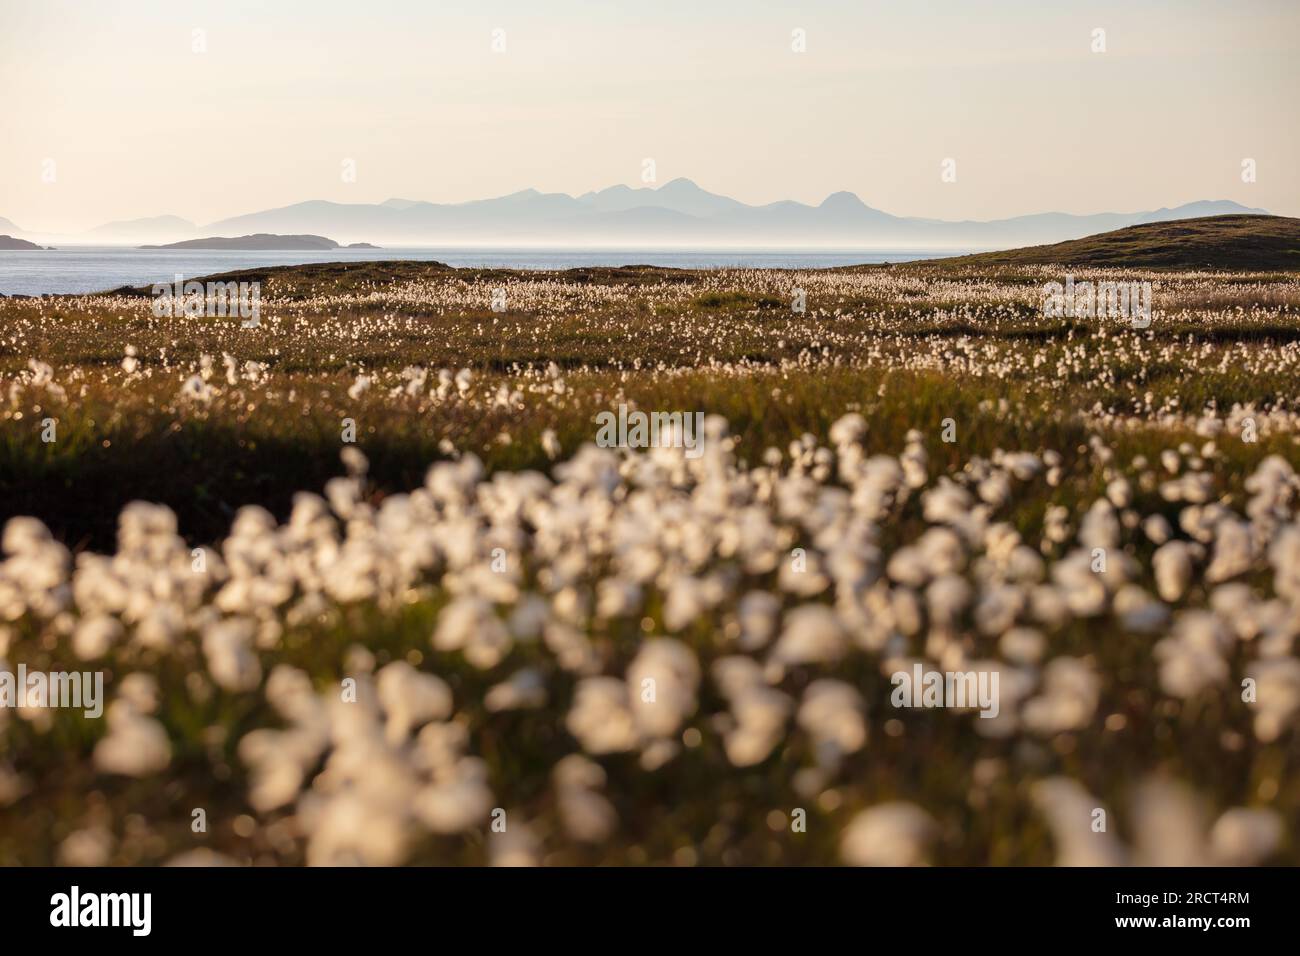 Hierba de algodón, montañas de la isla de Harris de Rubha Hunish, isla de Skye, paisaje de Escocia Foto de stock